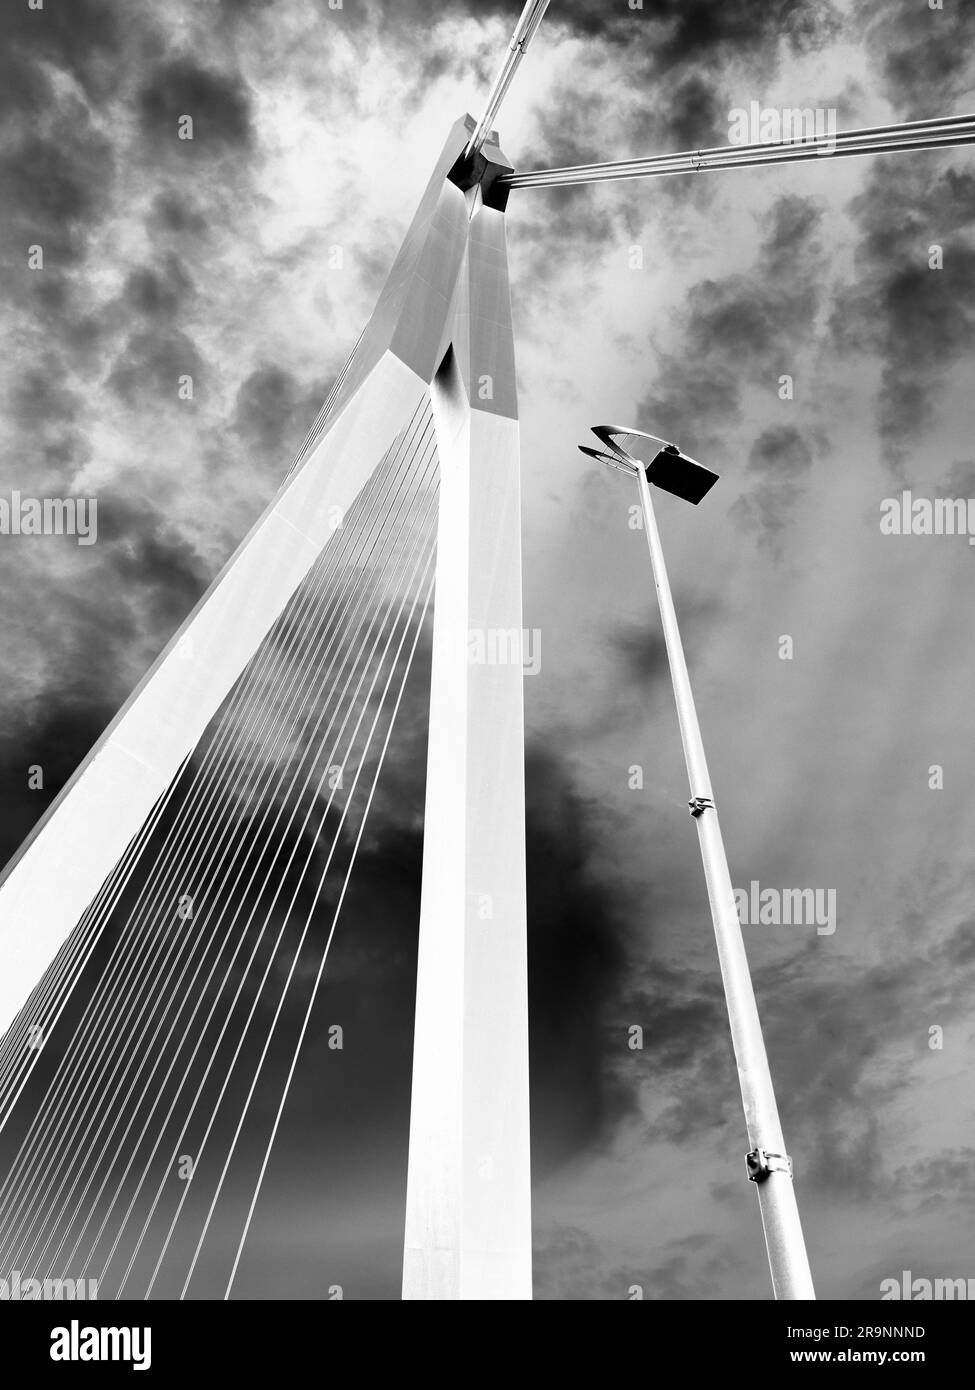 Nommé d'après le grand philosophe et humaniste hollandais de la renaissance, le magnifique nouveau pont suspendu de Rotterdam ajoute considérablement à la ville Banque D'Images